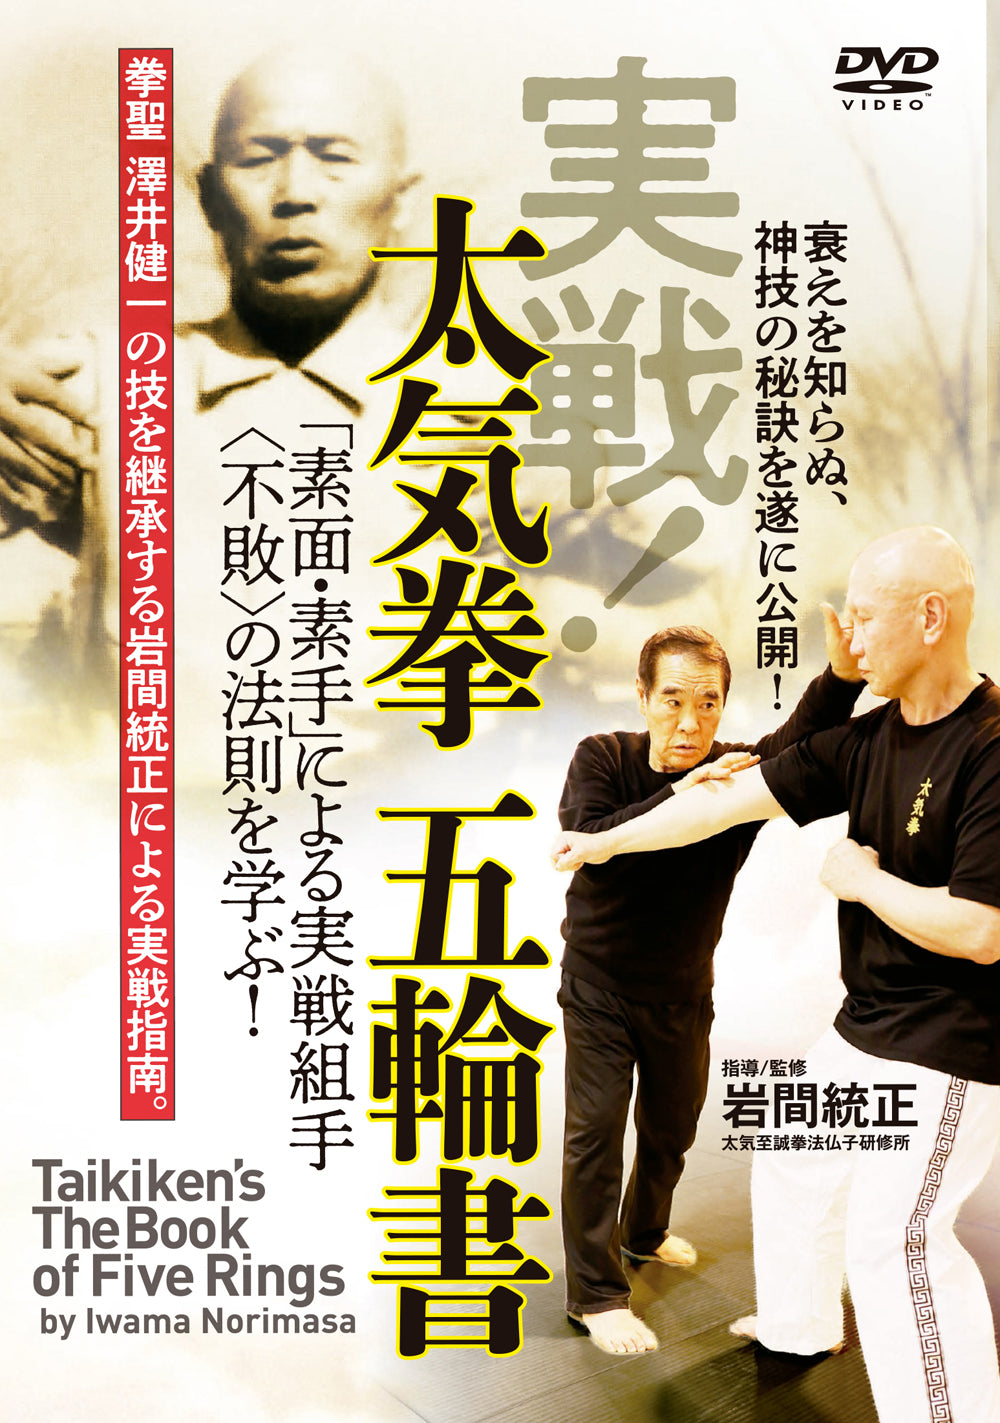 岩間憲正『タキケン五輪書』DVD